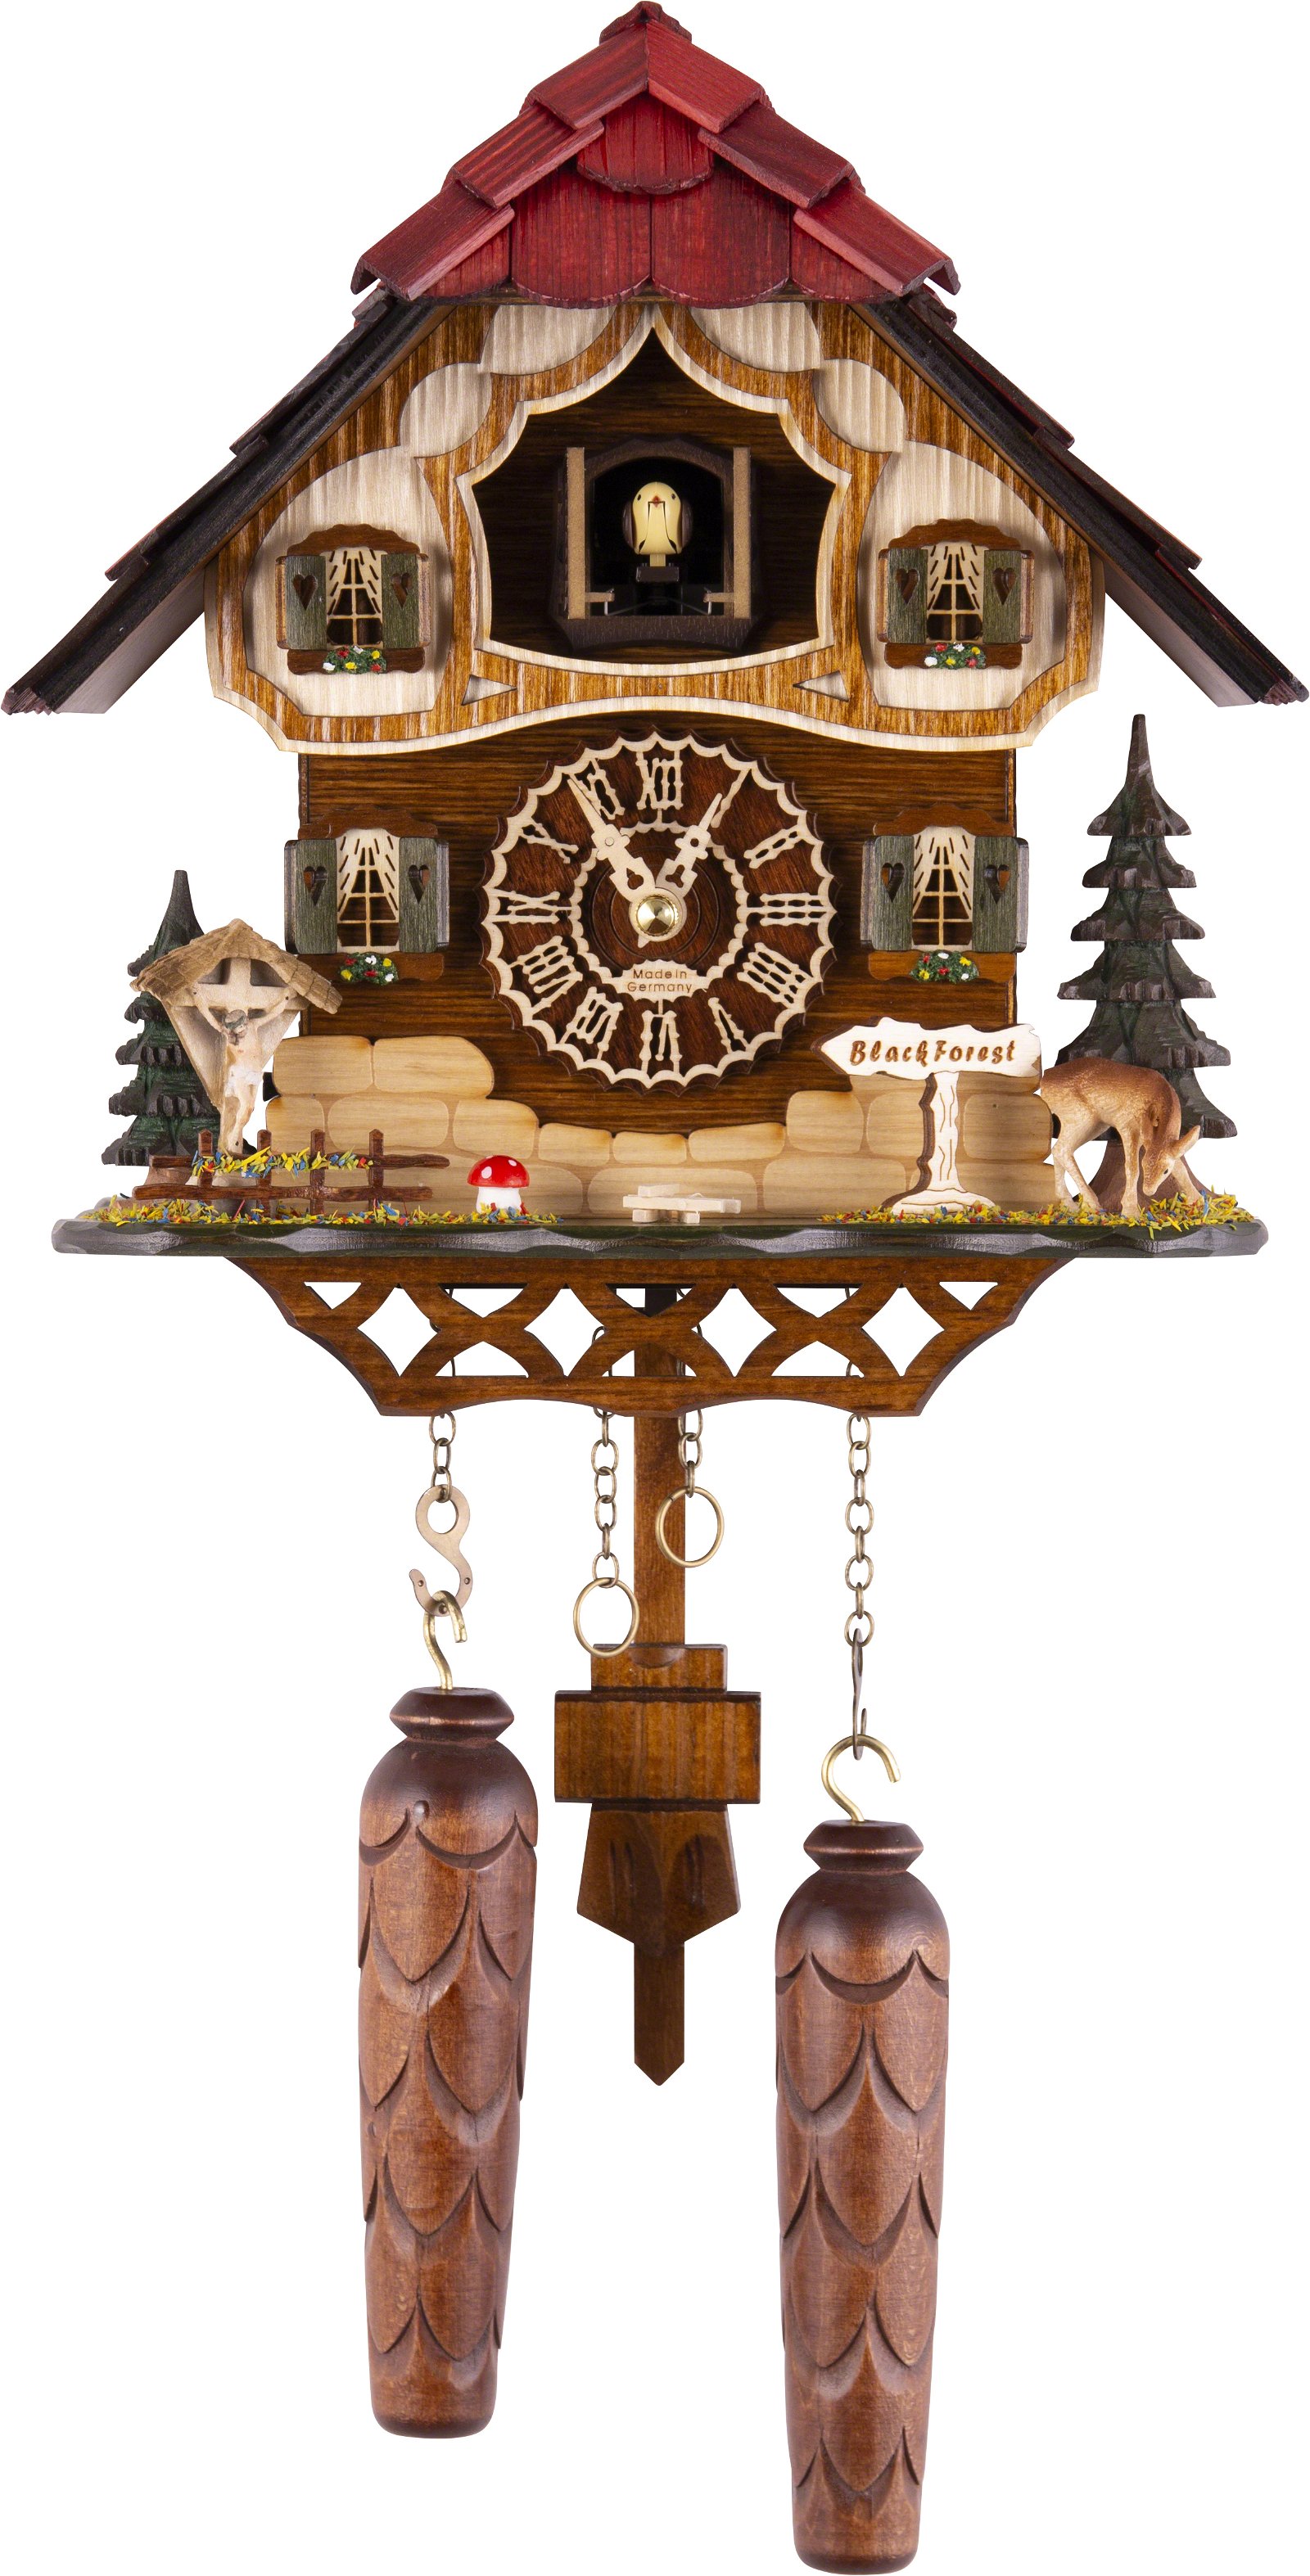 Kuckucksuhr Chalet-Stil Quarz-Uhrwerk 26cm von Trenkle Uhren